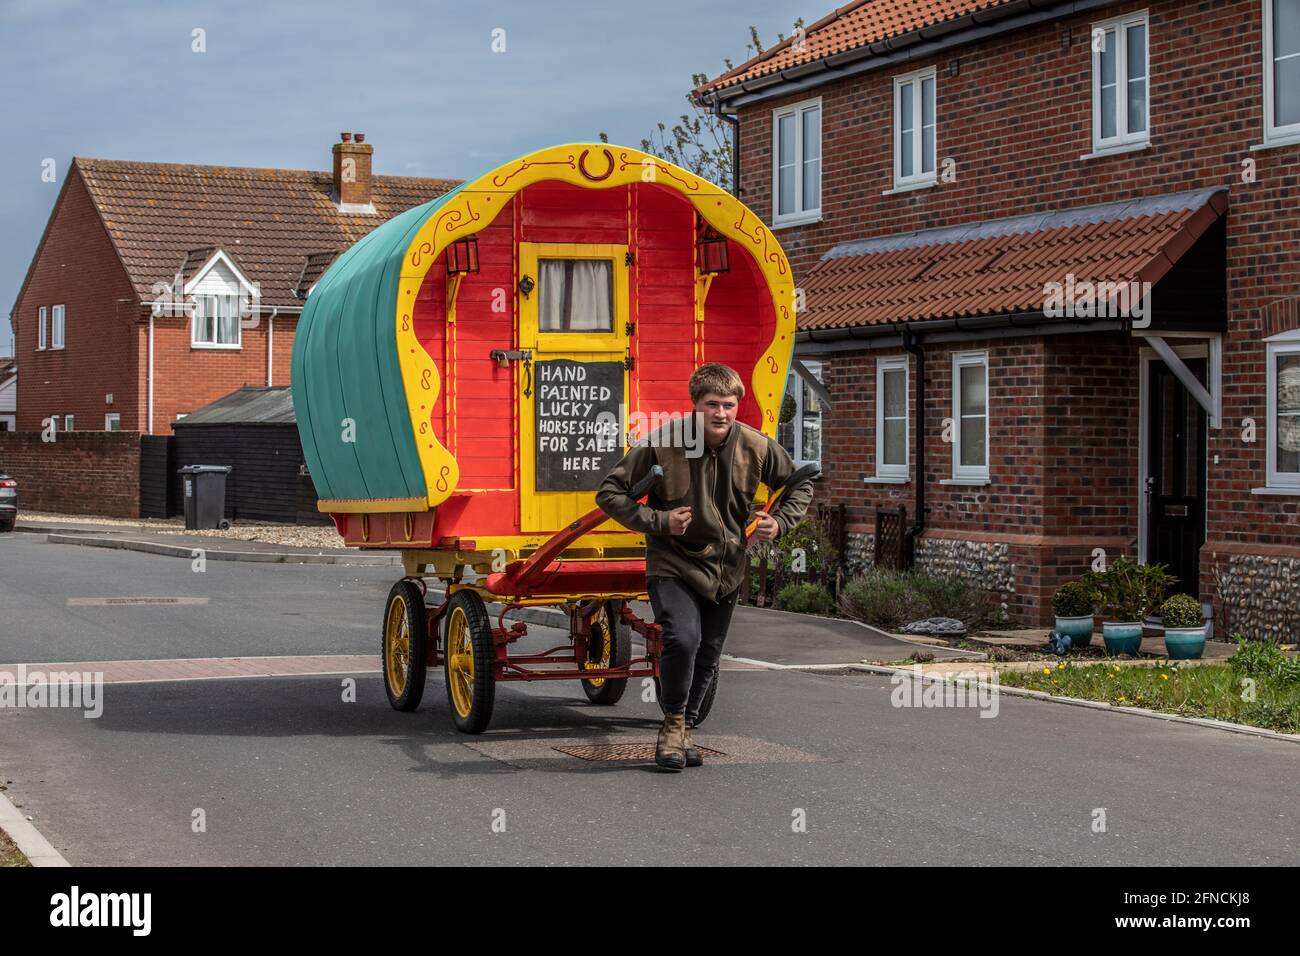 Freddy Coleman porte son ancien chariot à cheval à la recherche d'affaires vendant des fers à cheval peints à Bacton, Norfolk, Angleterre, Royaume-Uni Banque D'Images